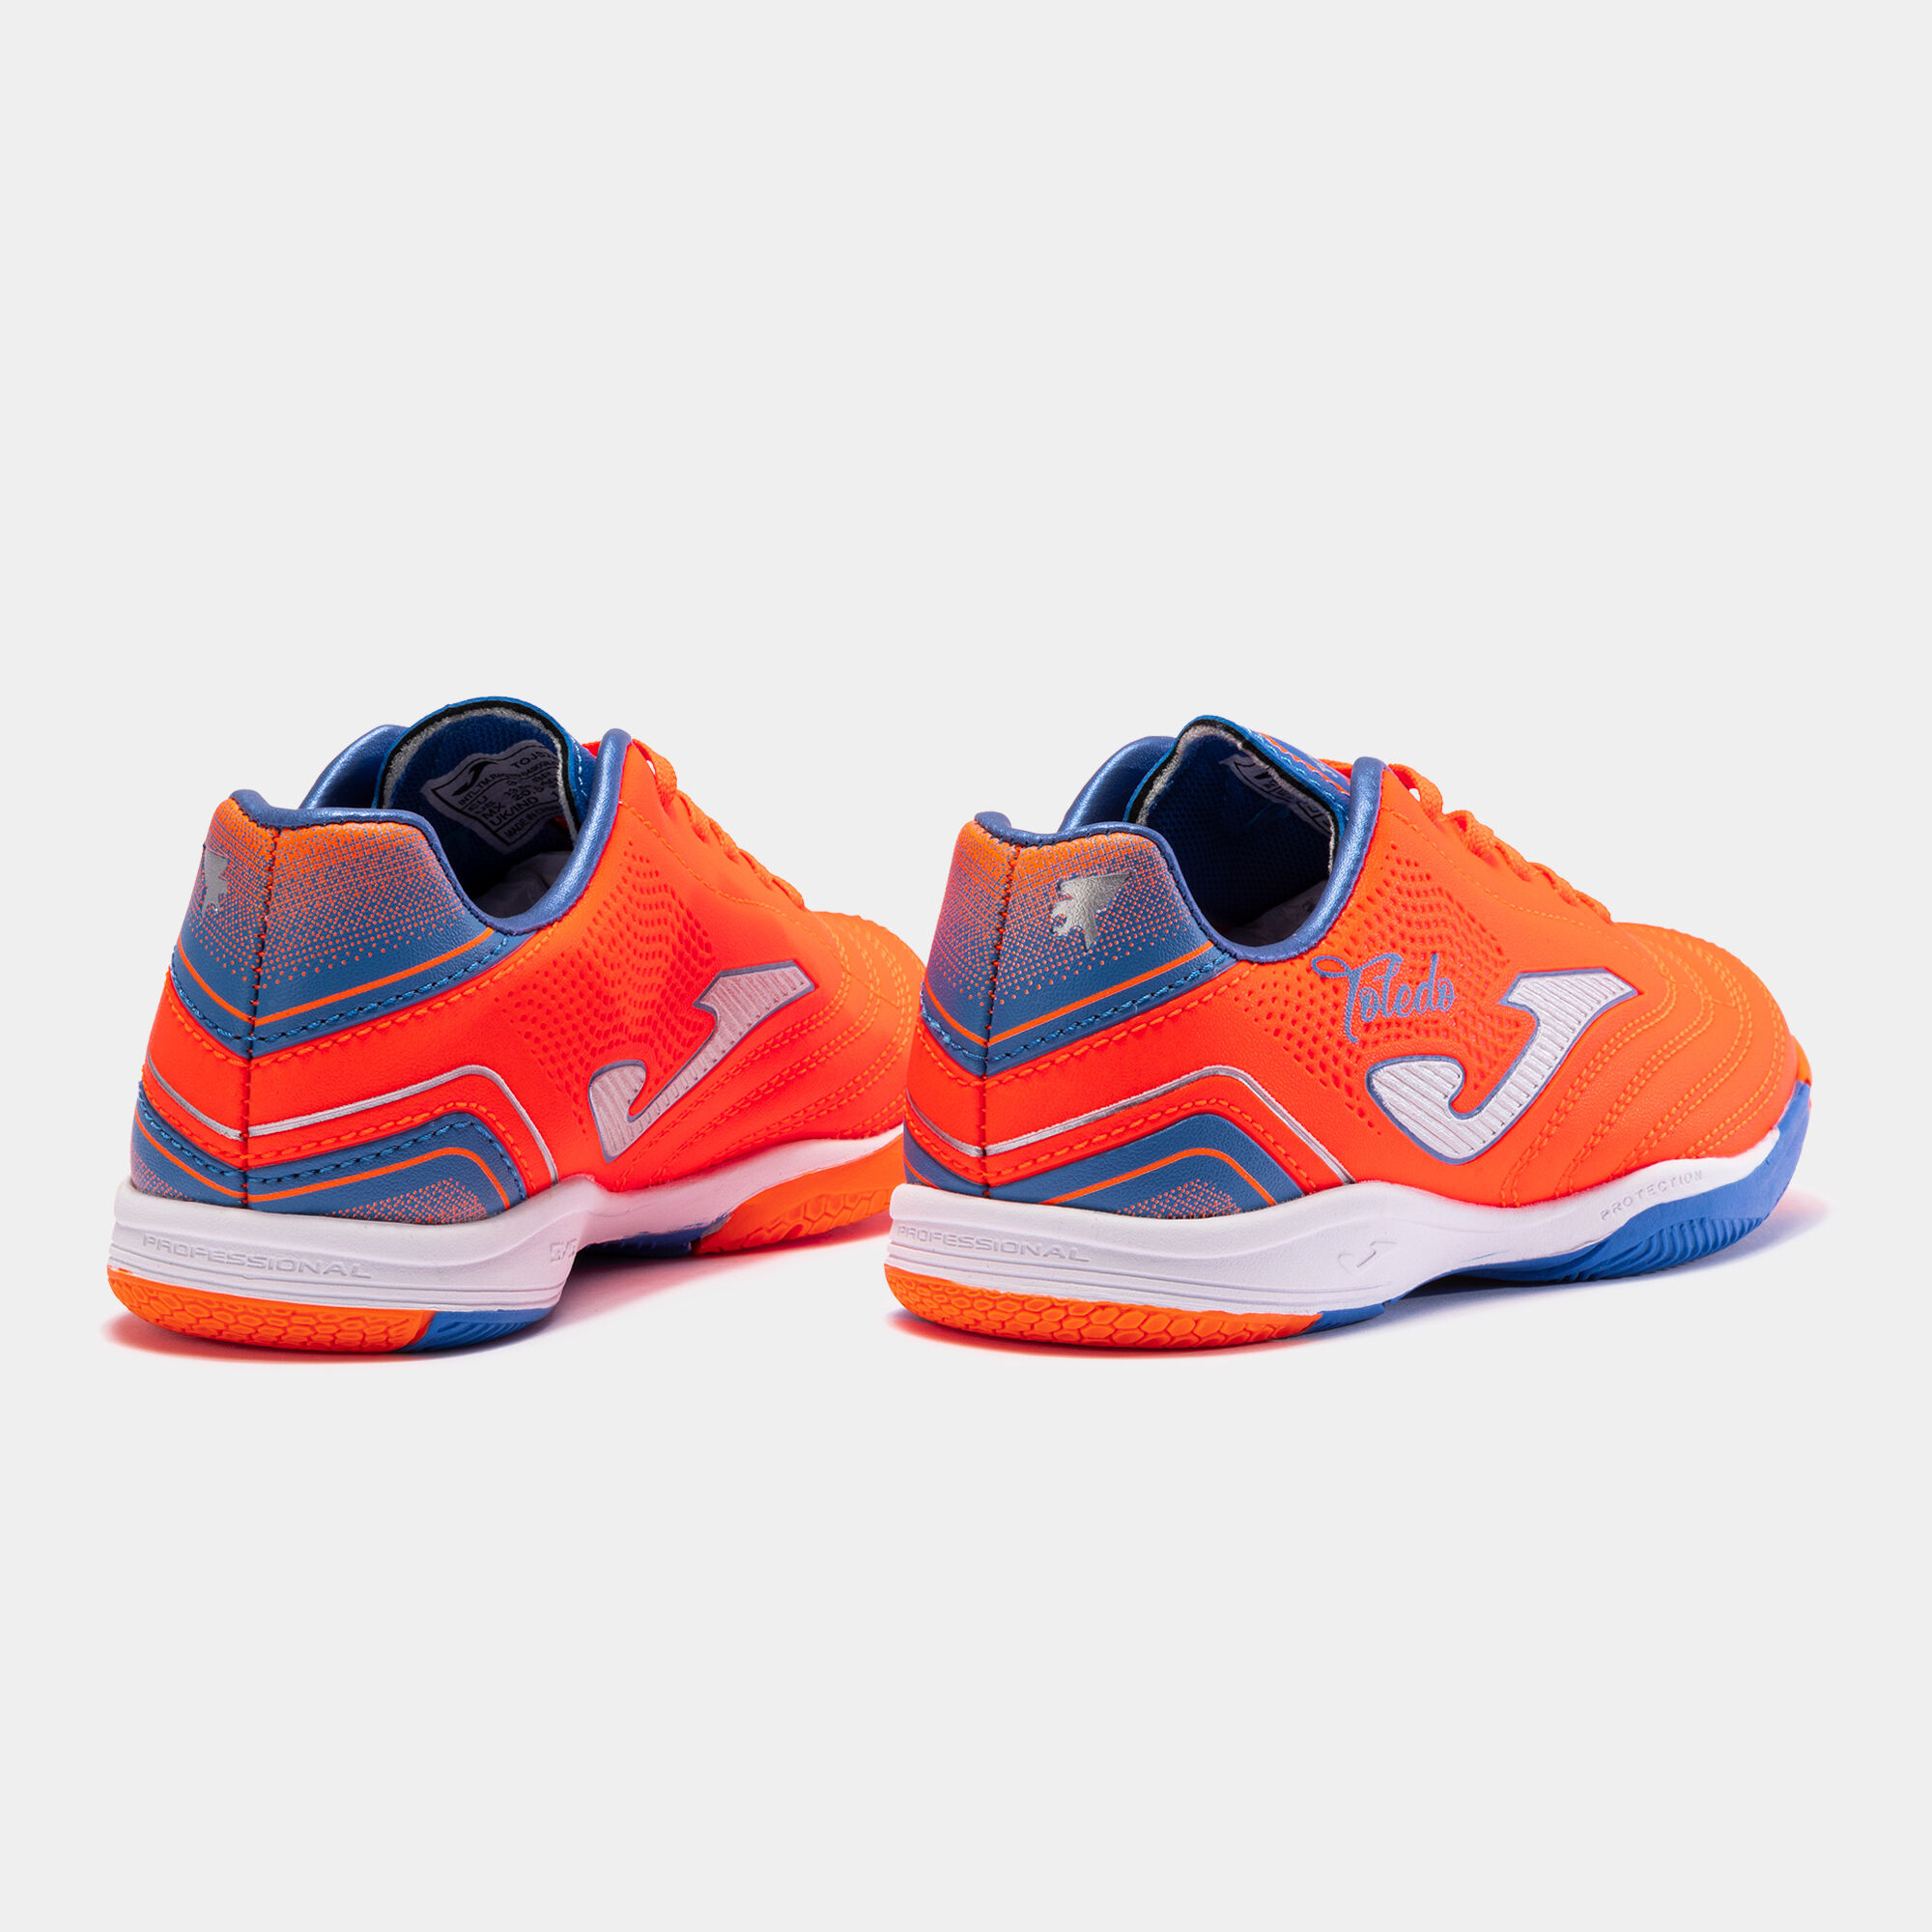 Chaussures futsal Toledo Jr 23 indoor junior orange bleu roi